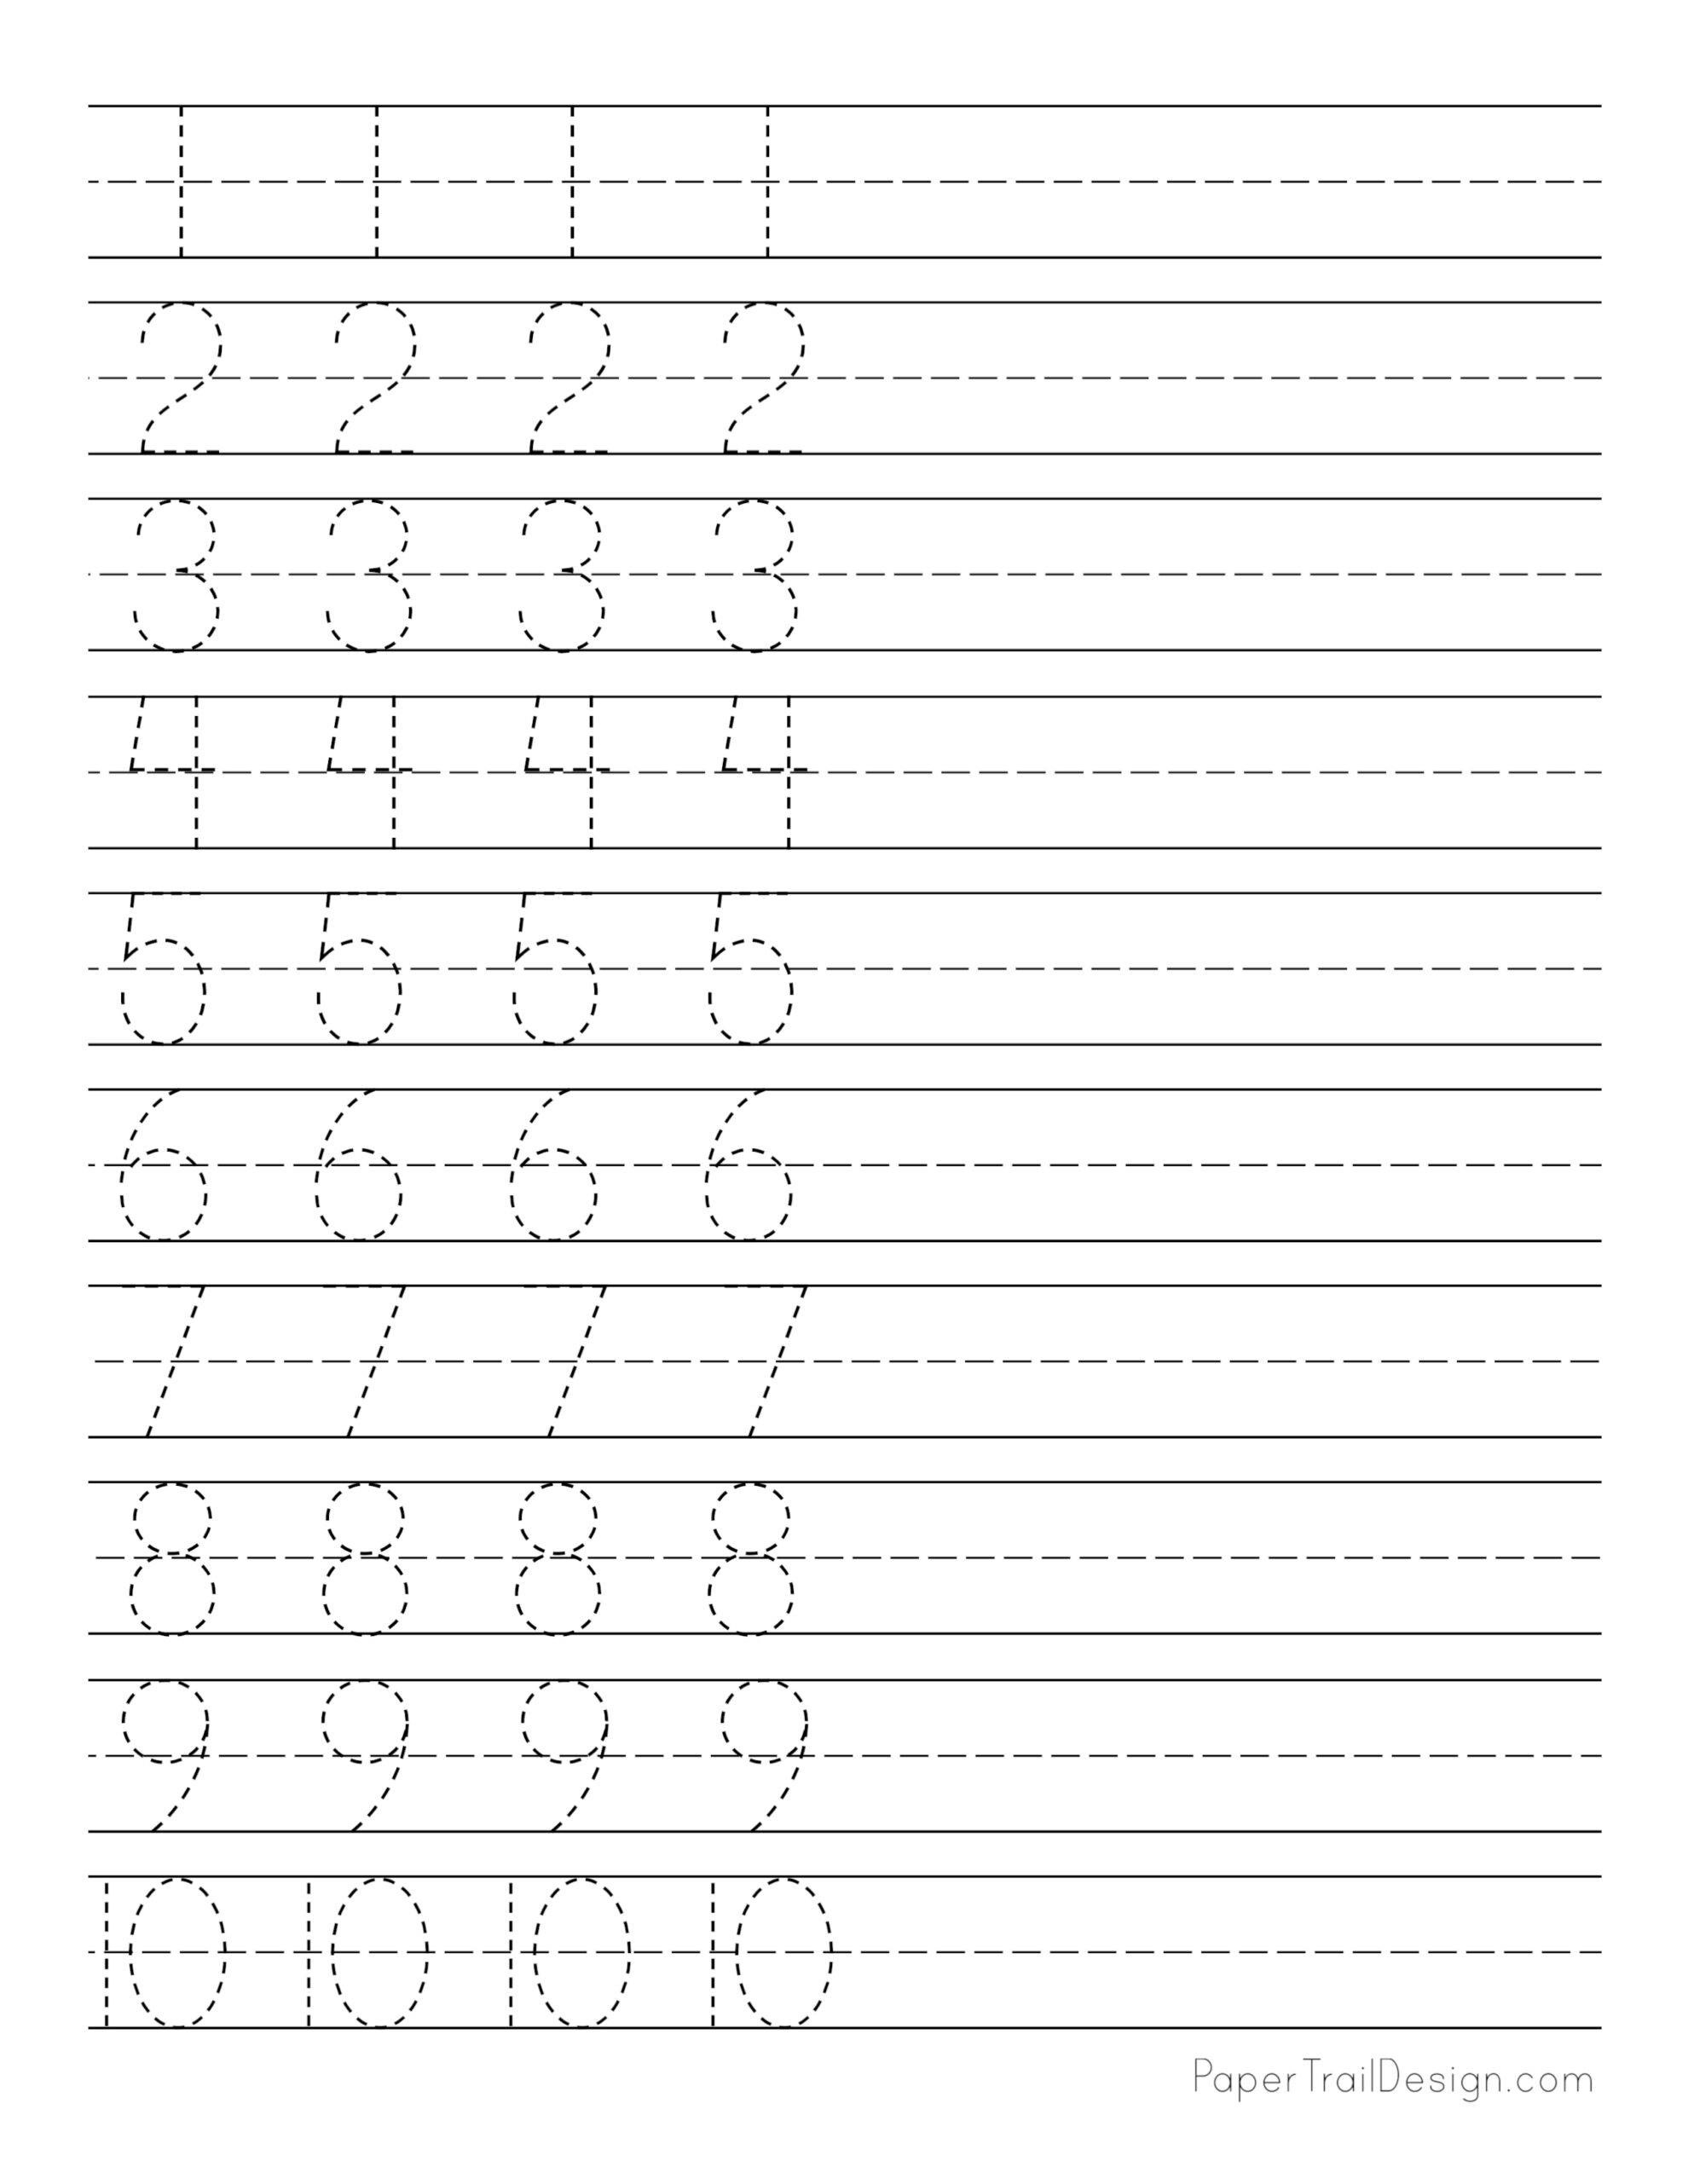 practice-writing-numbers-1-10-worksheet-worksheets-for-kindergarten